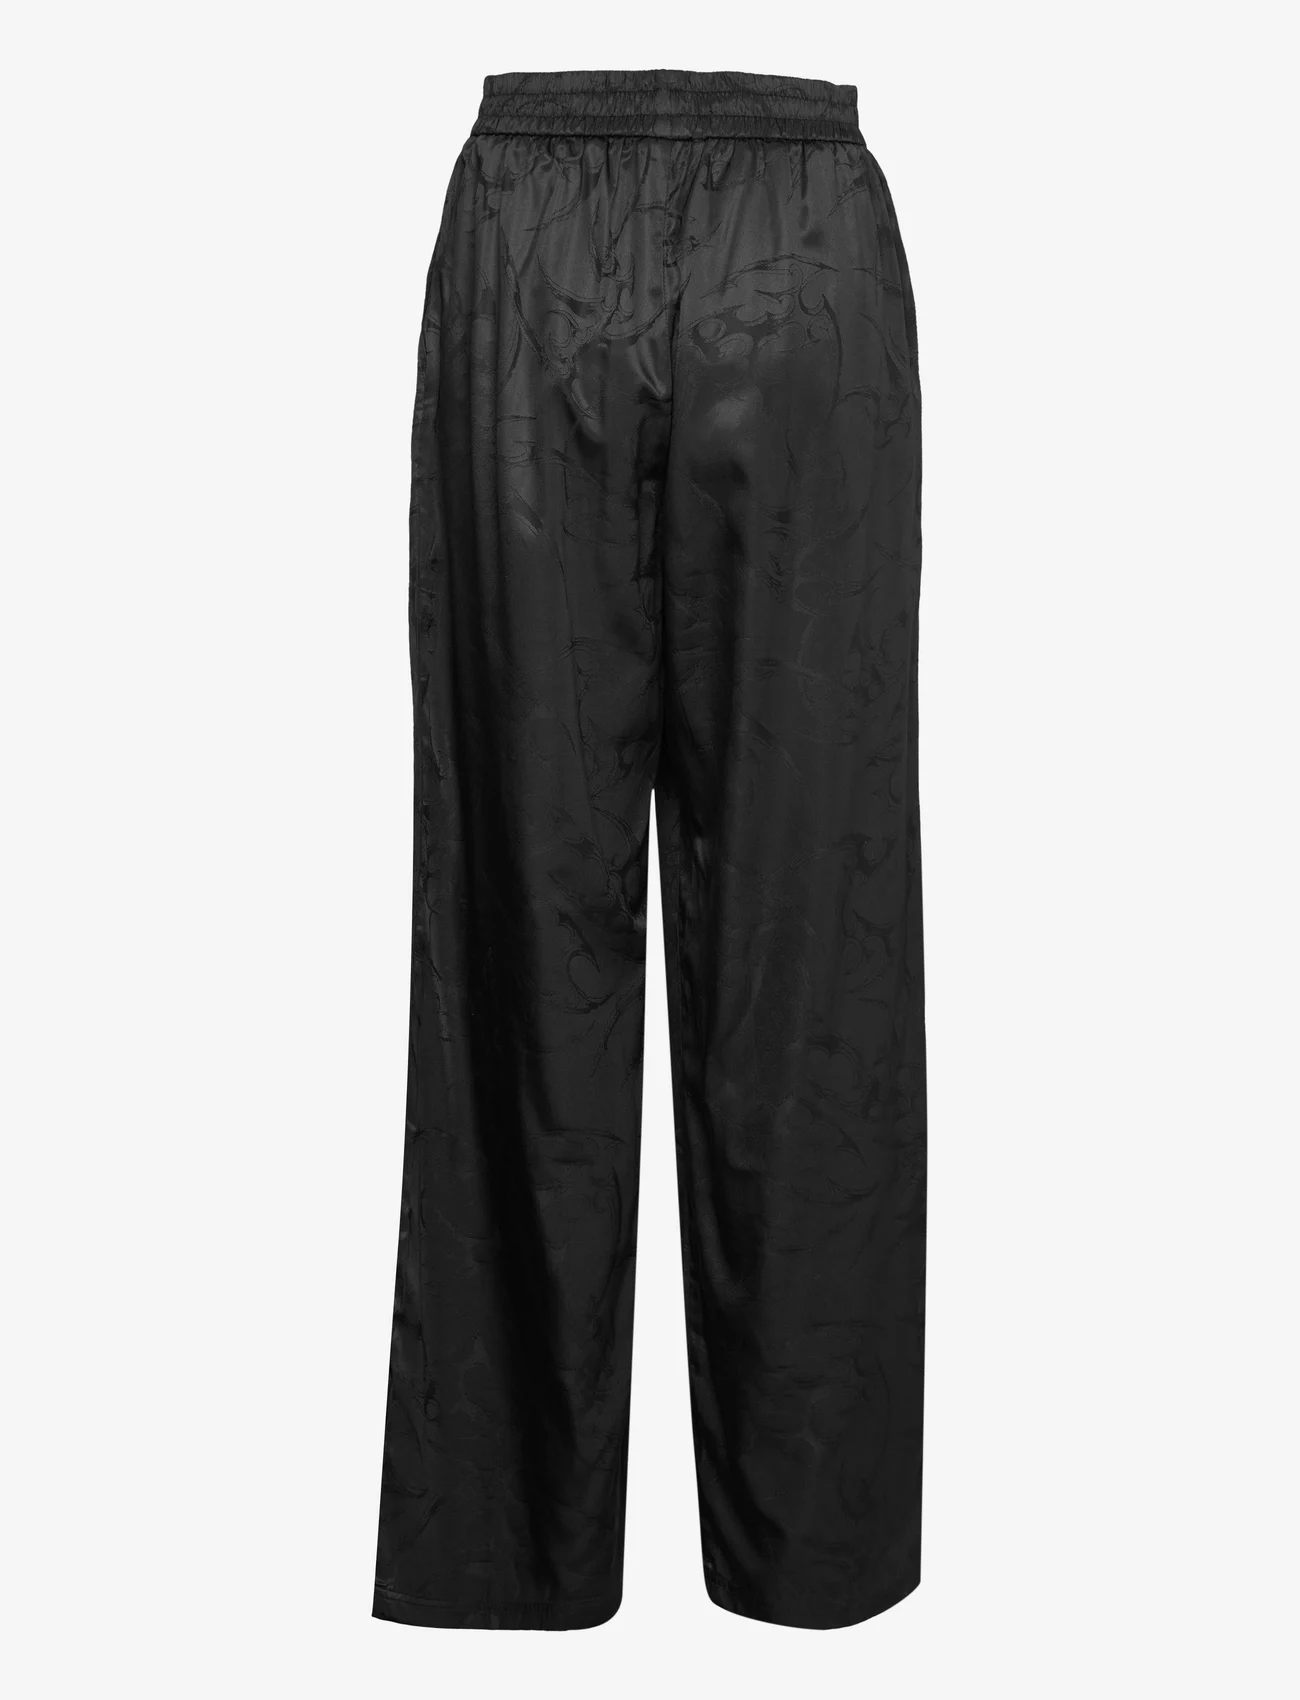 HAN Kjøbenhavn - Jacquard Wide-Leg Trousers - bukser med brede ben - black - 1